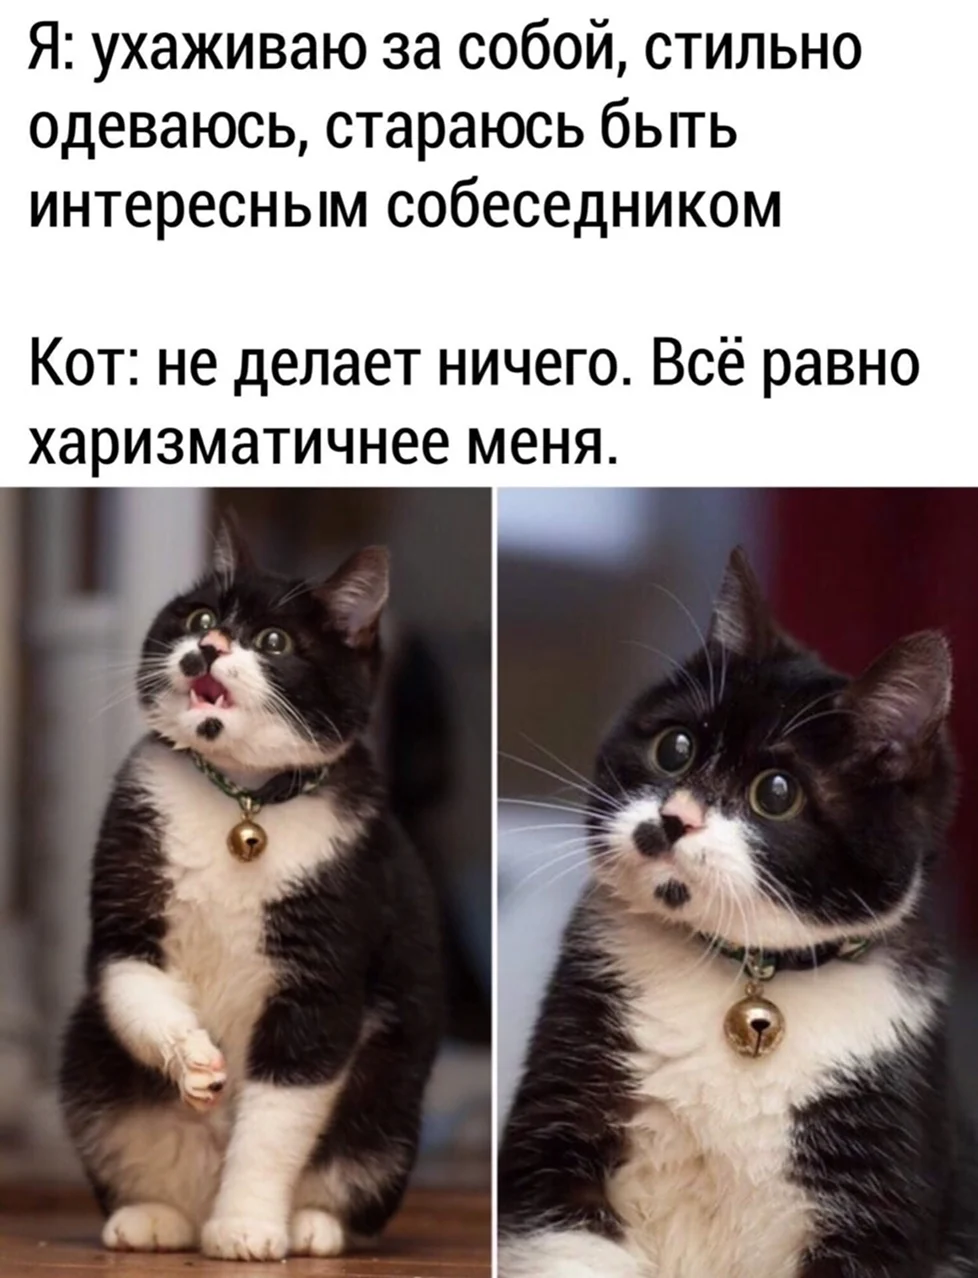 Смешные мемы с котами. Прикольная картинка